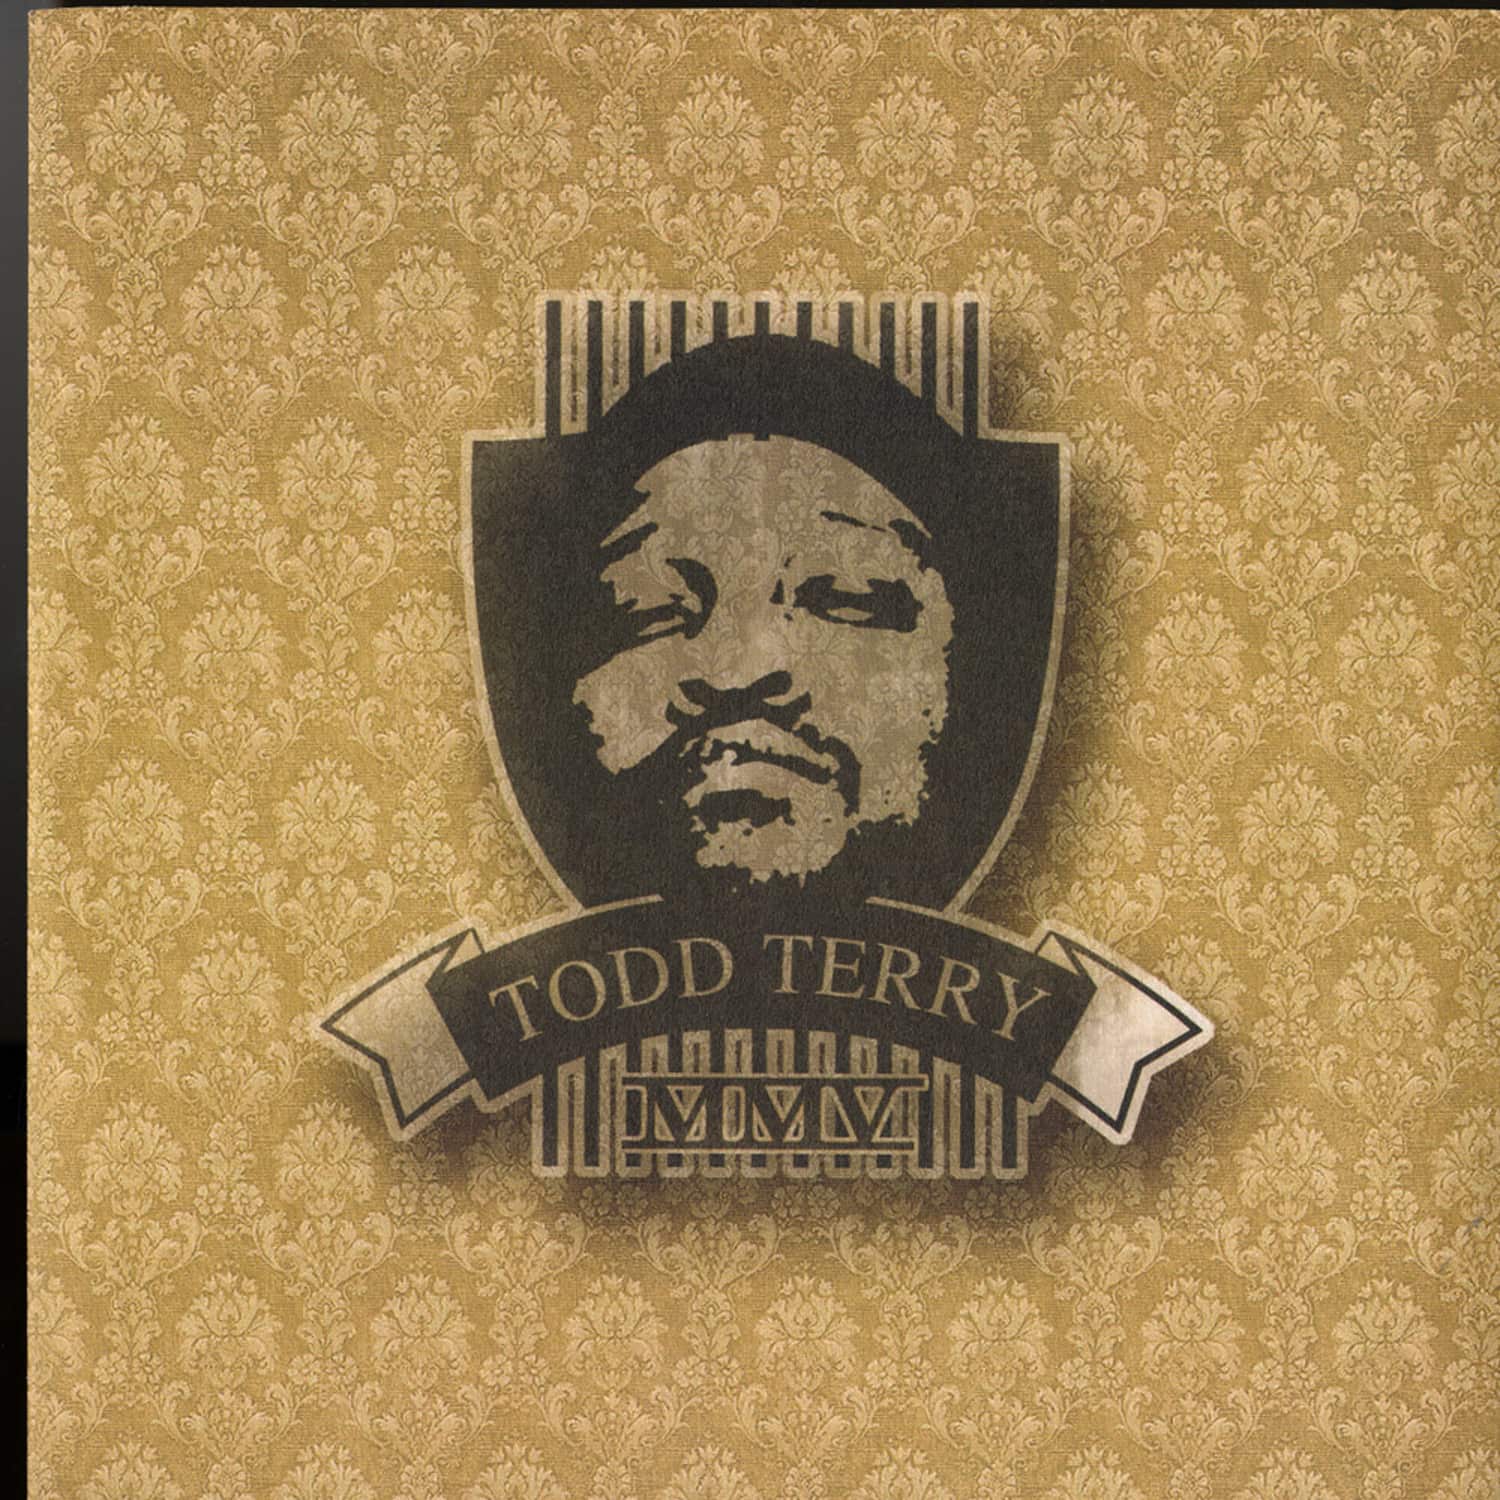 Todd Terry  - 2005 EP 